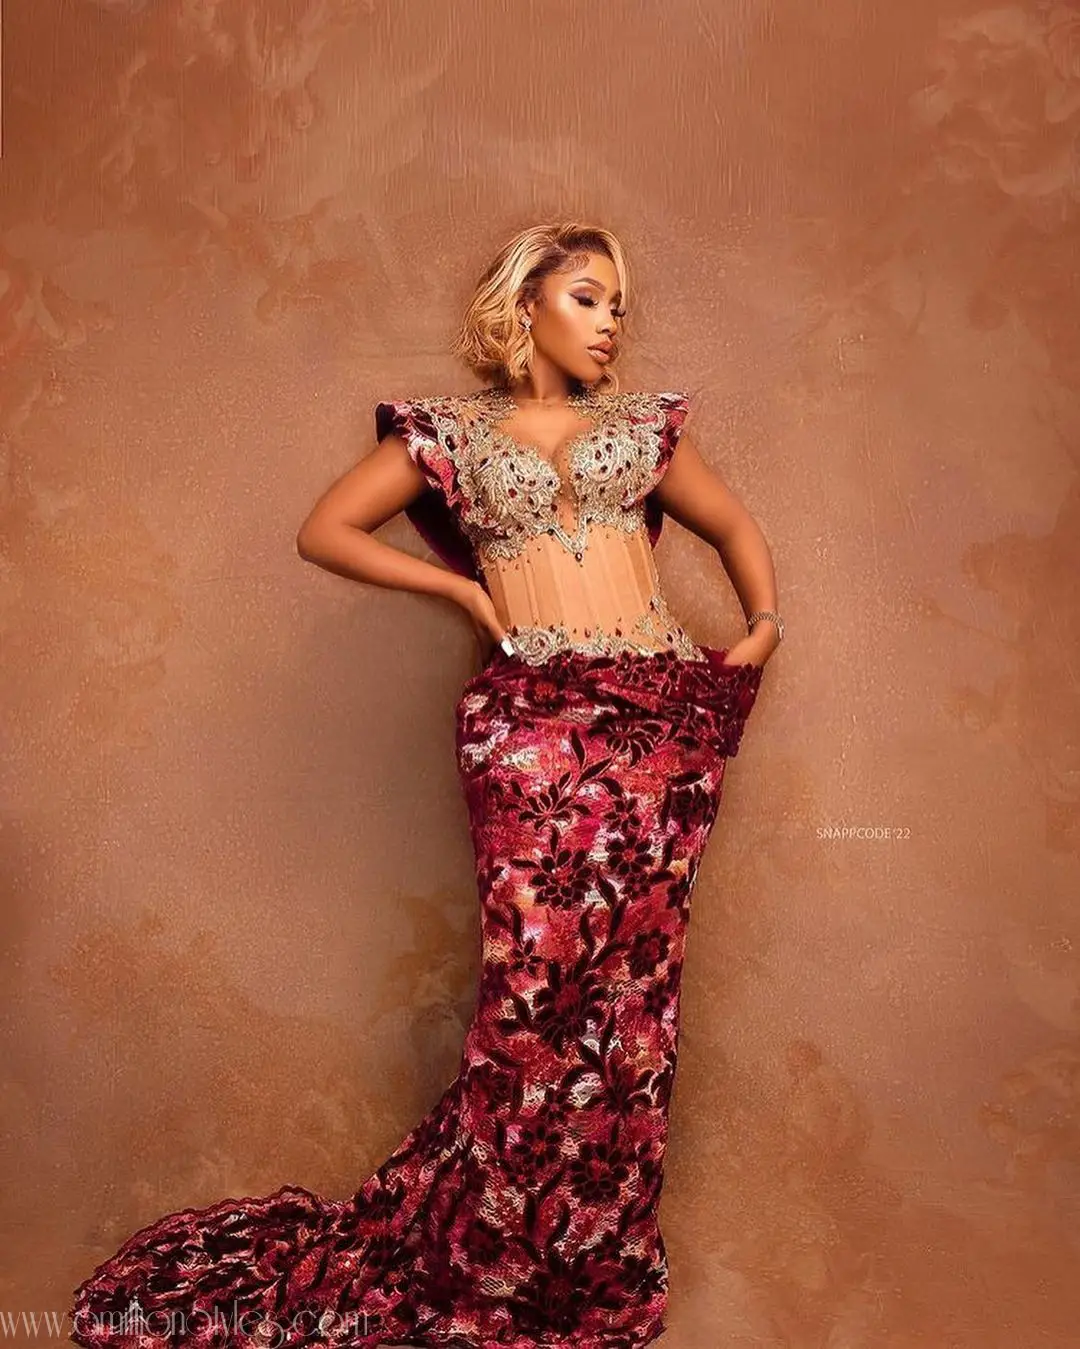 Exquisite Nigerian Lace Asoebi Styles-Volume 55